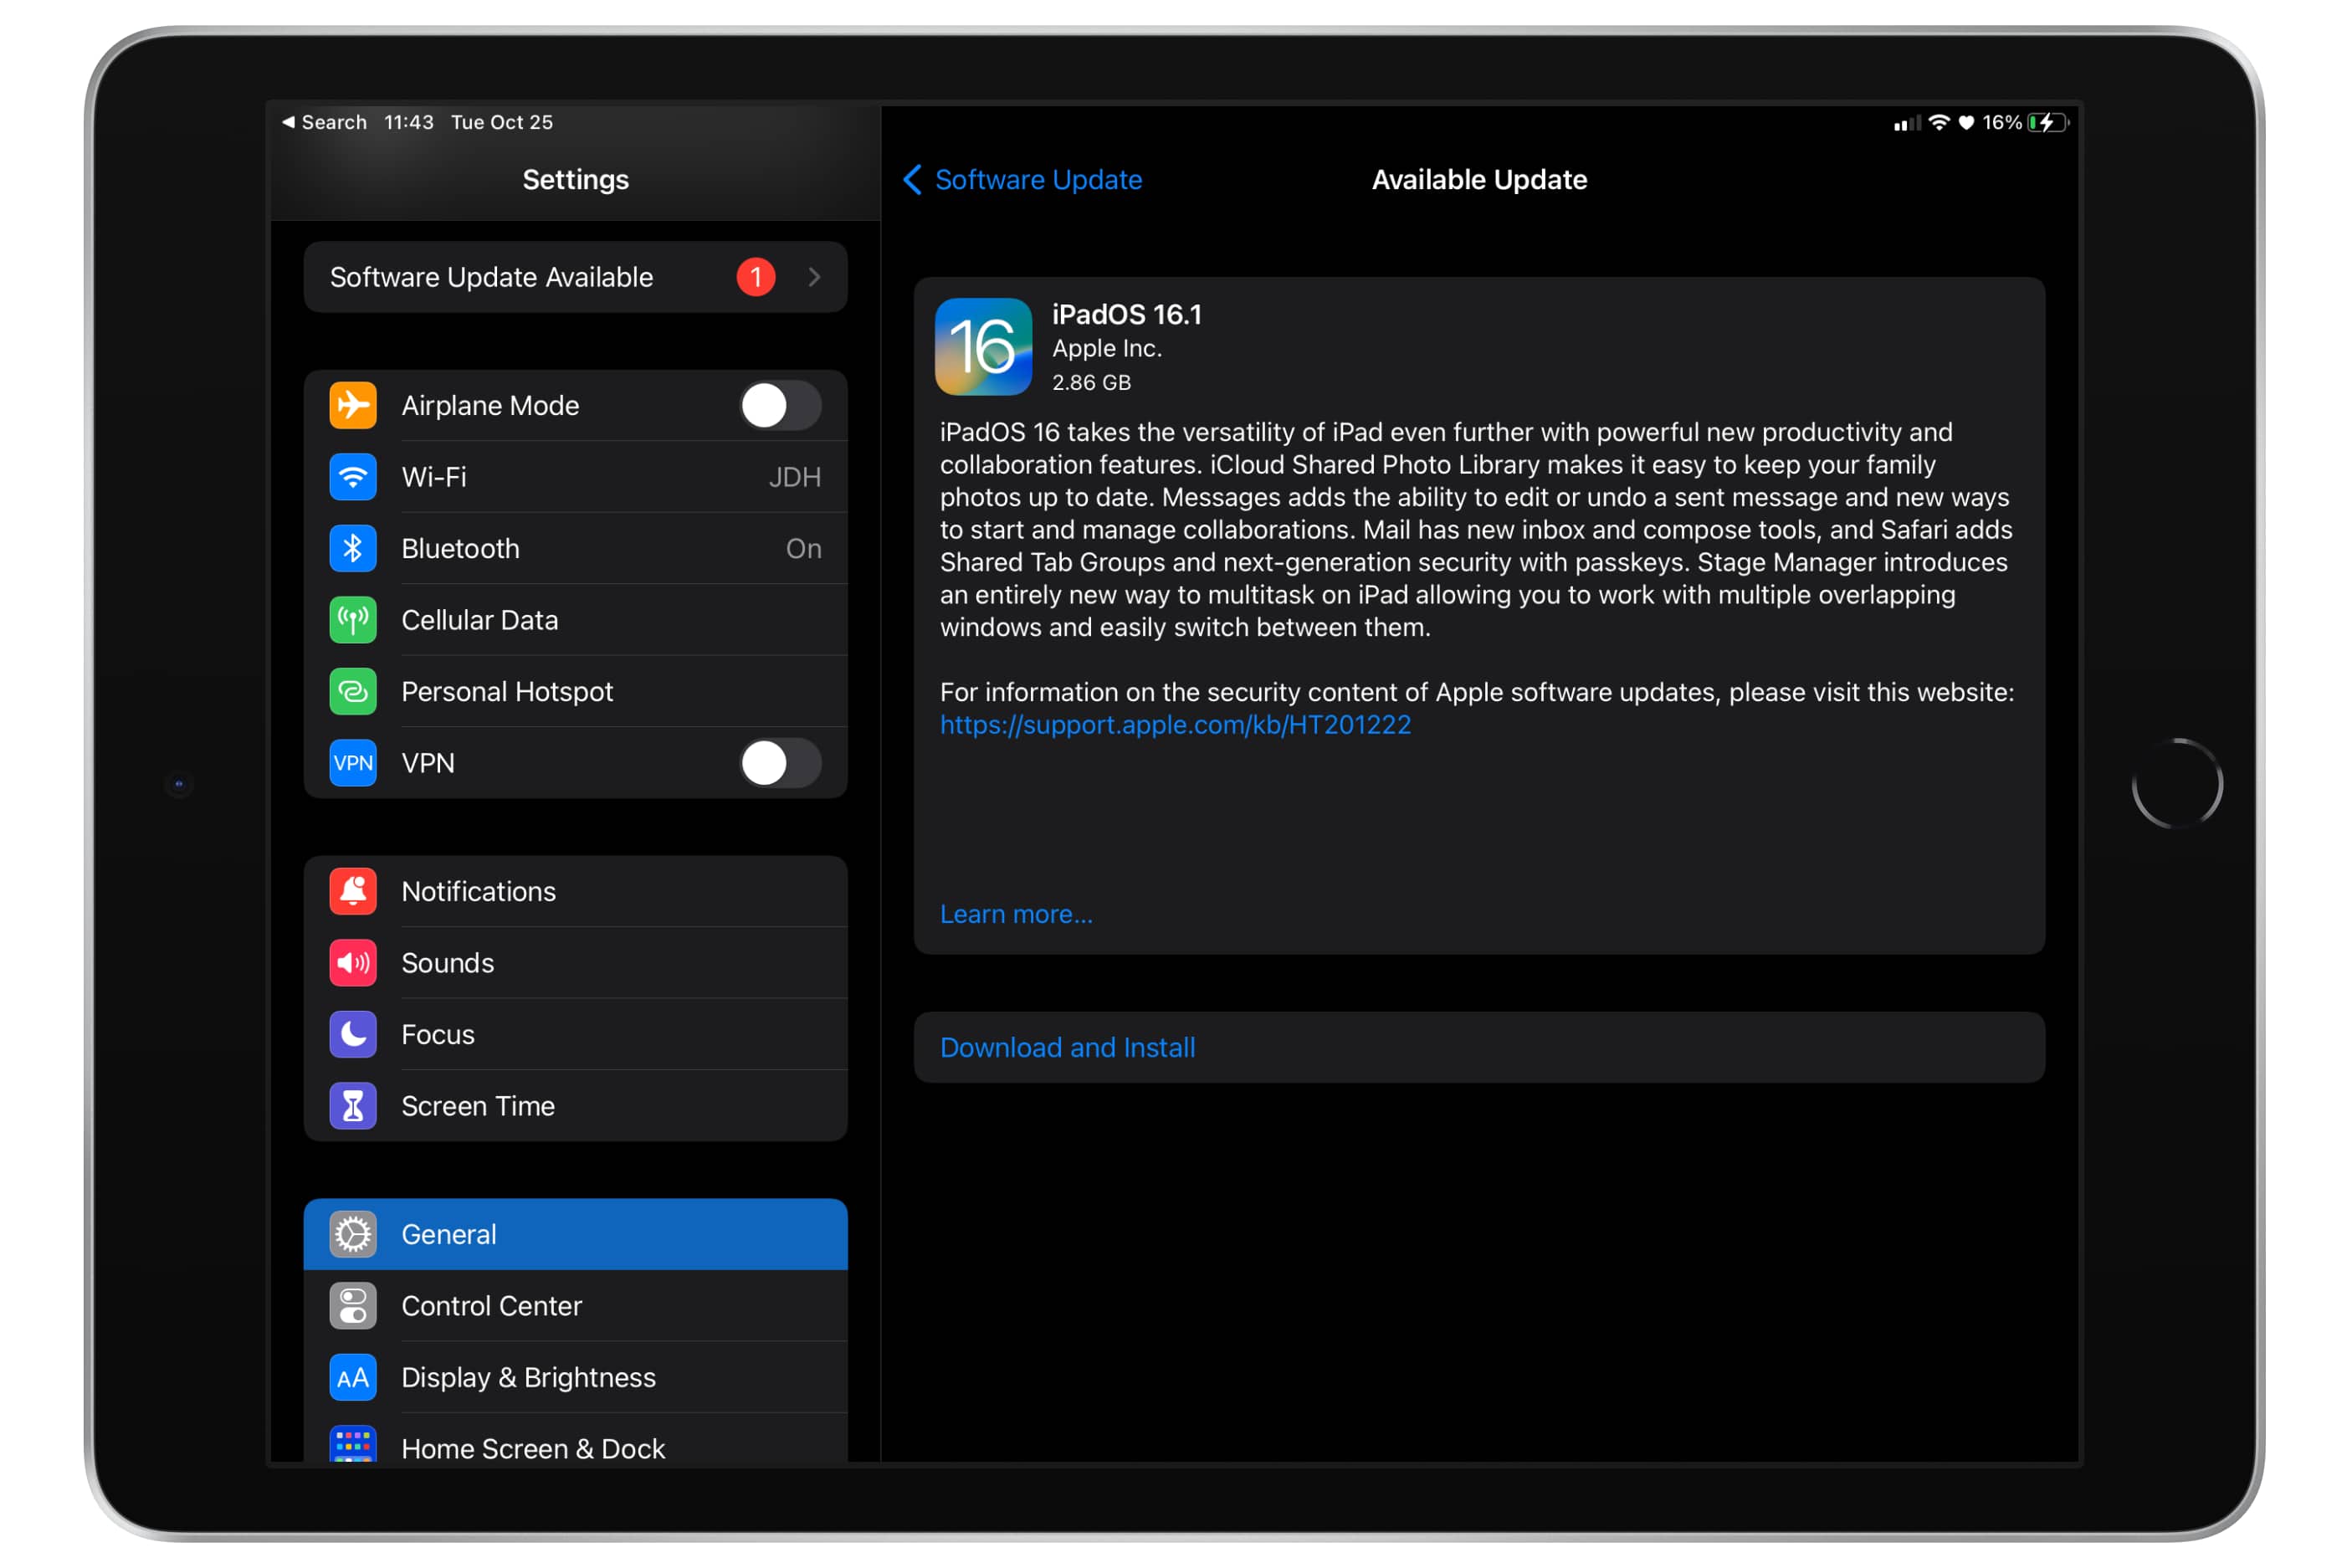 Tela de atualização de software do iPadOS 16.1 no iPad.